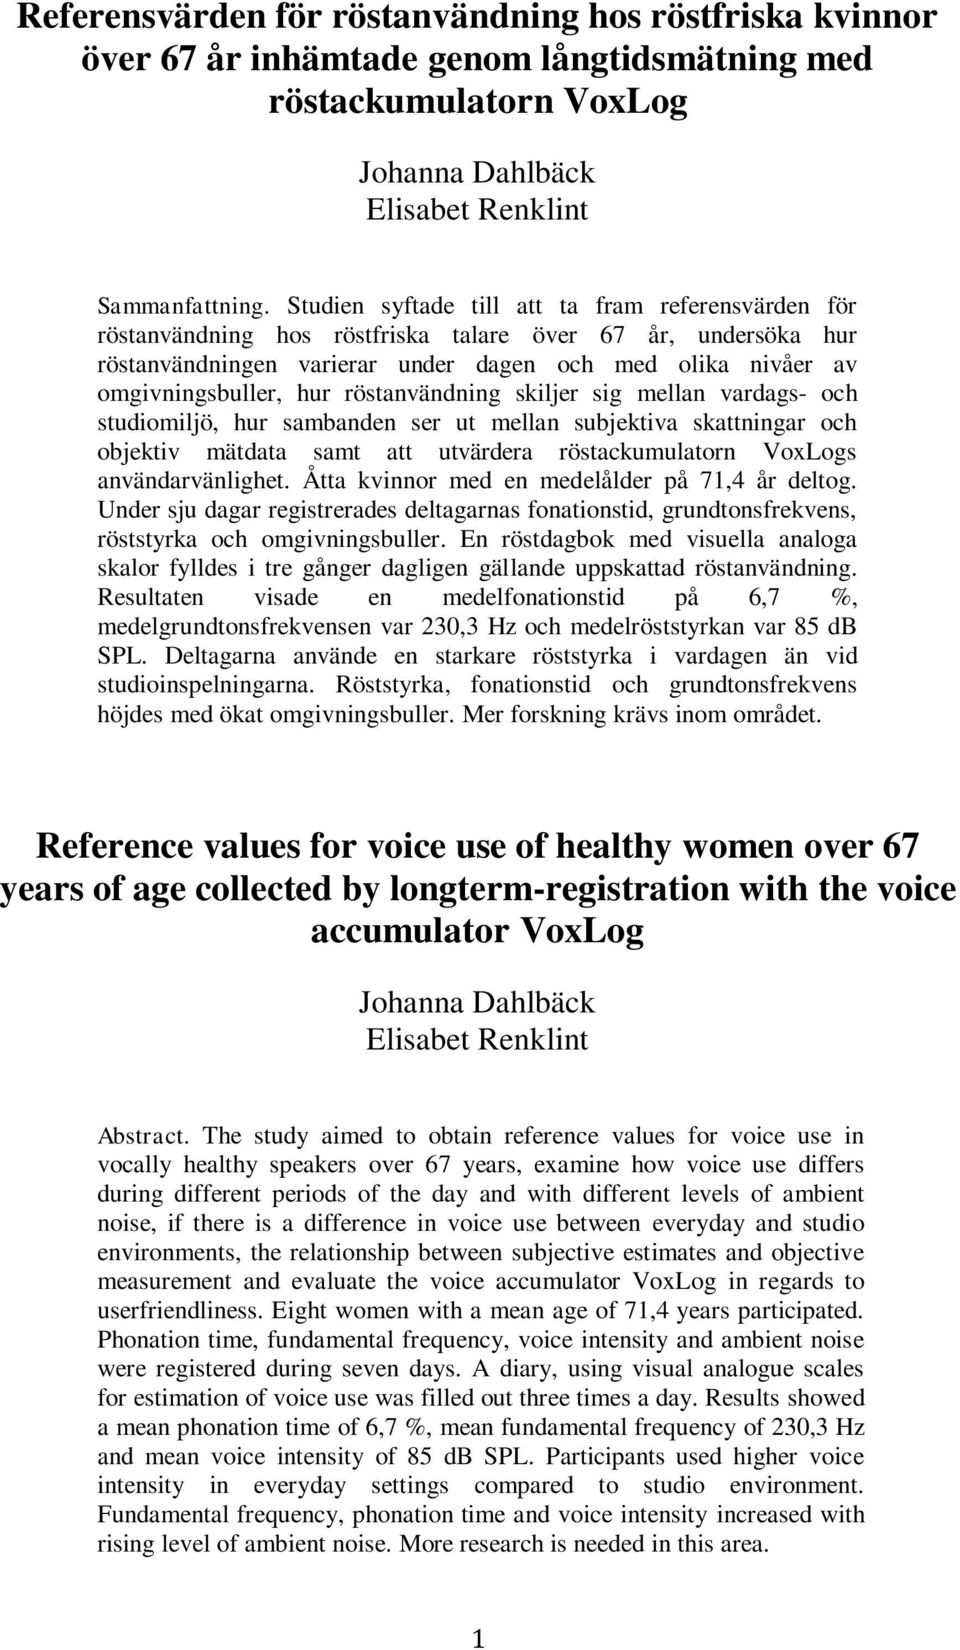 röstanvändning skiljer sig mellan vardags- och studiomiljö, hur sambanden ser ut mellan subjektiva skattningar och objektiv mätdata samt att utvärdera röstackumulatorn VoxLogs användarvänlighet.